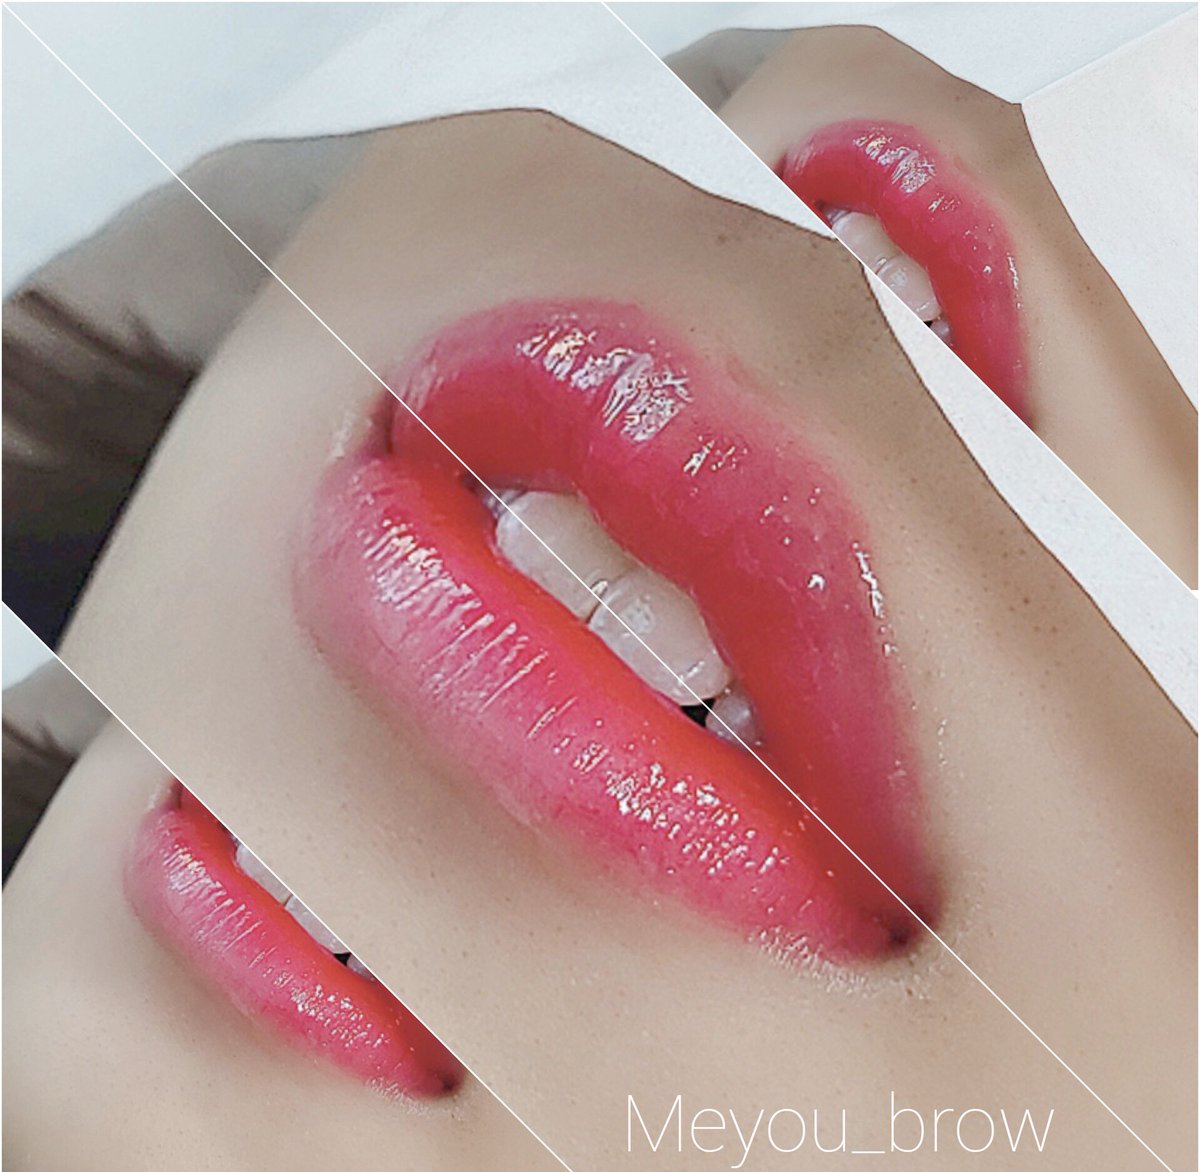 Meyou Brow Lipアートメイク 素顔でも常にリップを塗っているように見せる施術 グラデリップの特徴 じゅわっと血色のような仕上がり ボリュームある唇も小さく見える ふっくら立体感を出せる 艶っぽい仕上がり アートメイク韓国